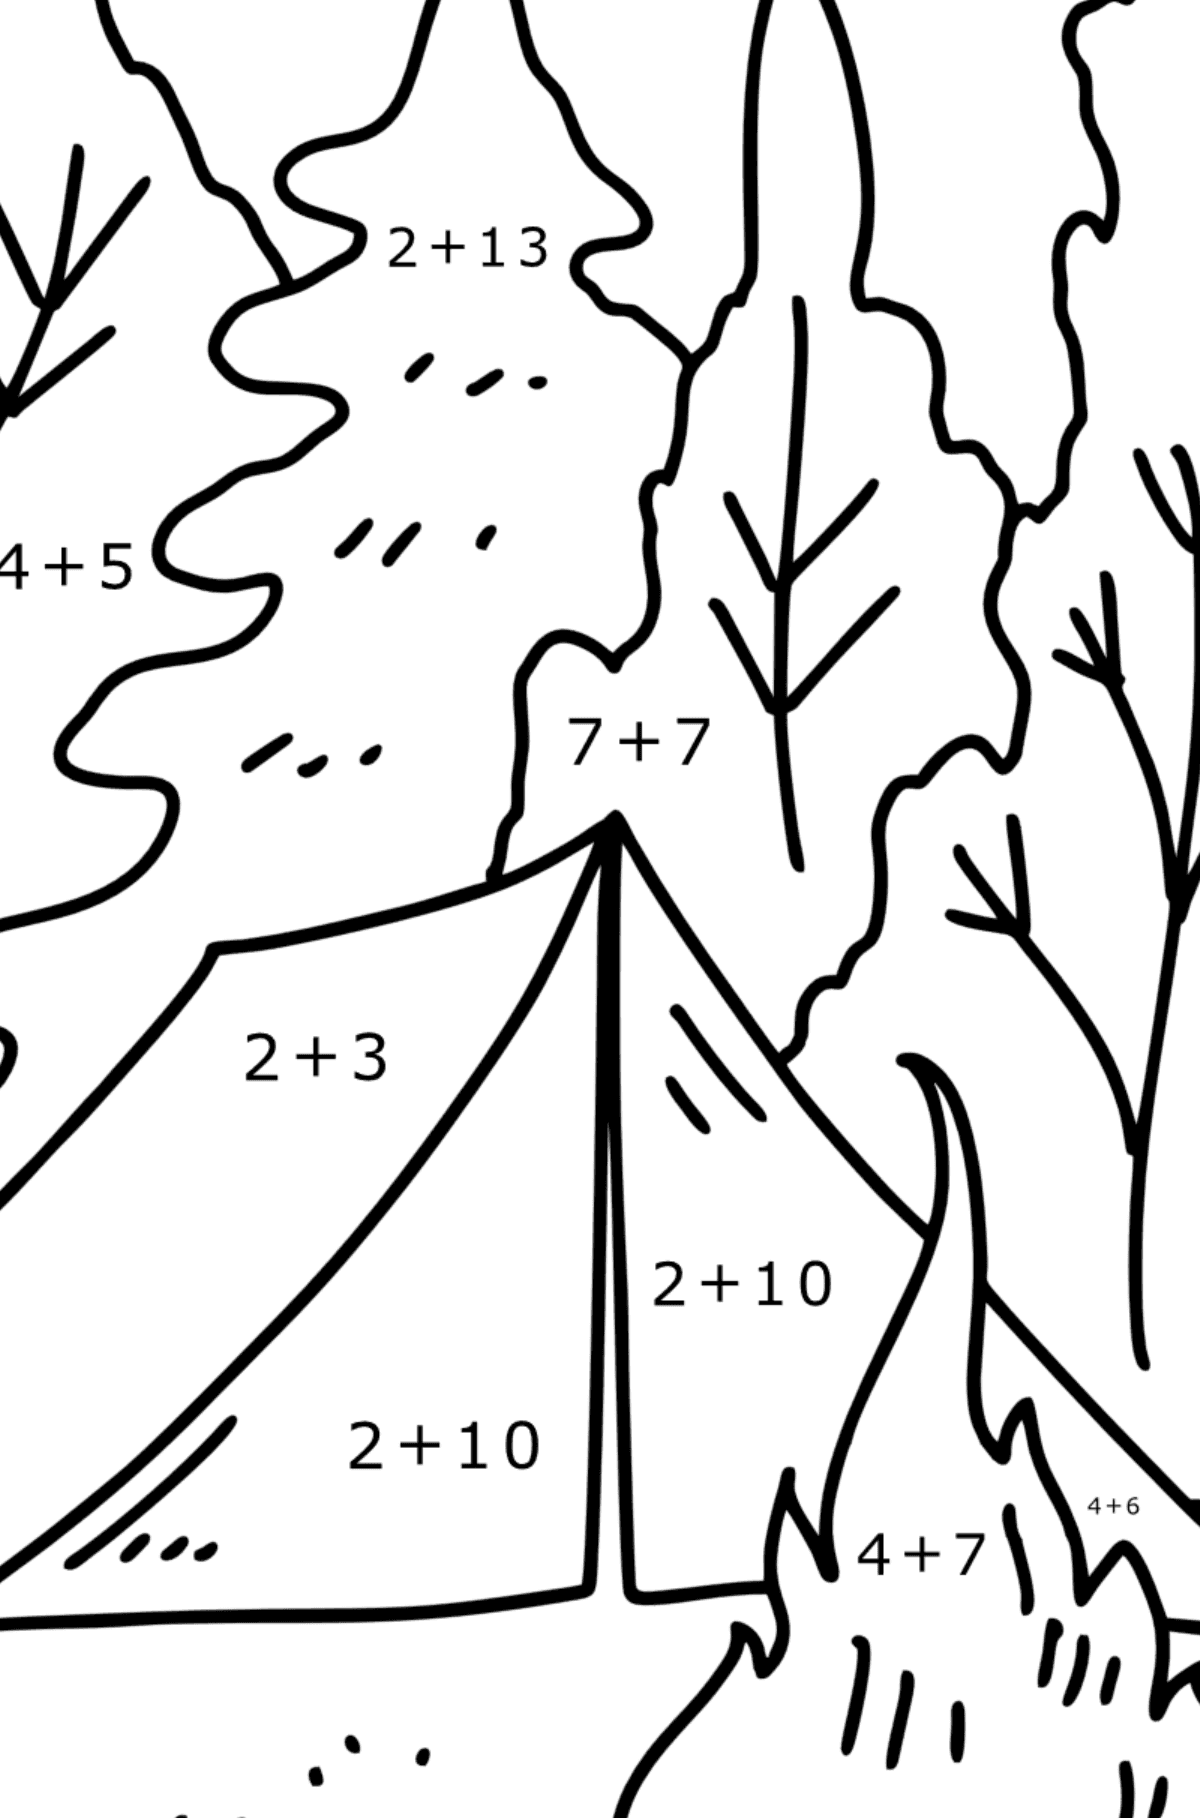 Omalovánka stan v lese - Matematická Omalovánka - Sčítání pro děti